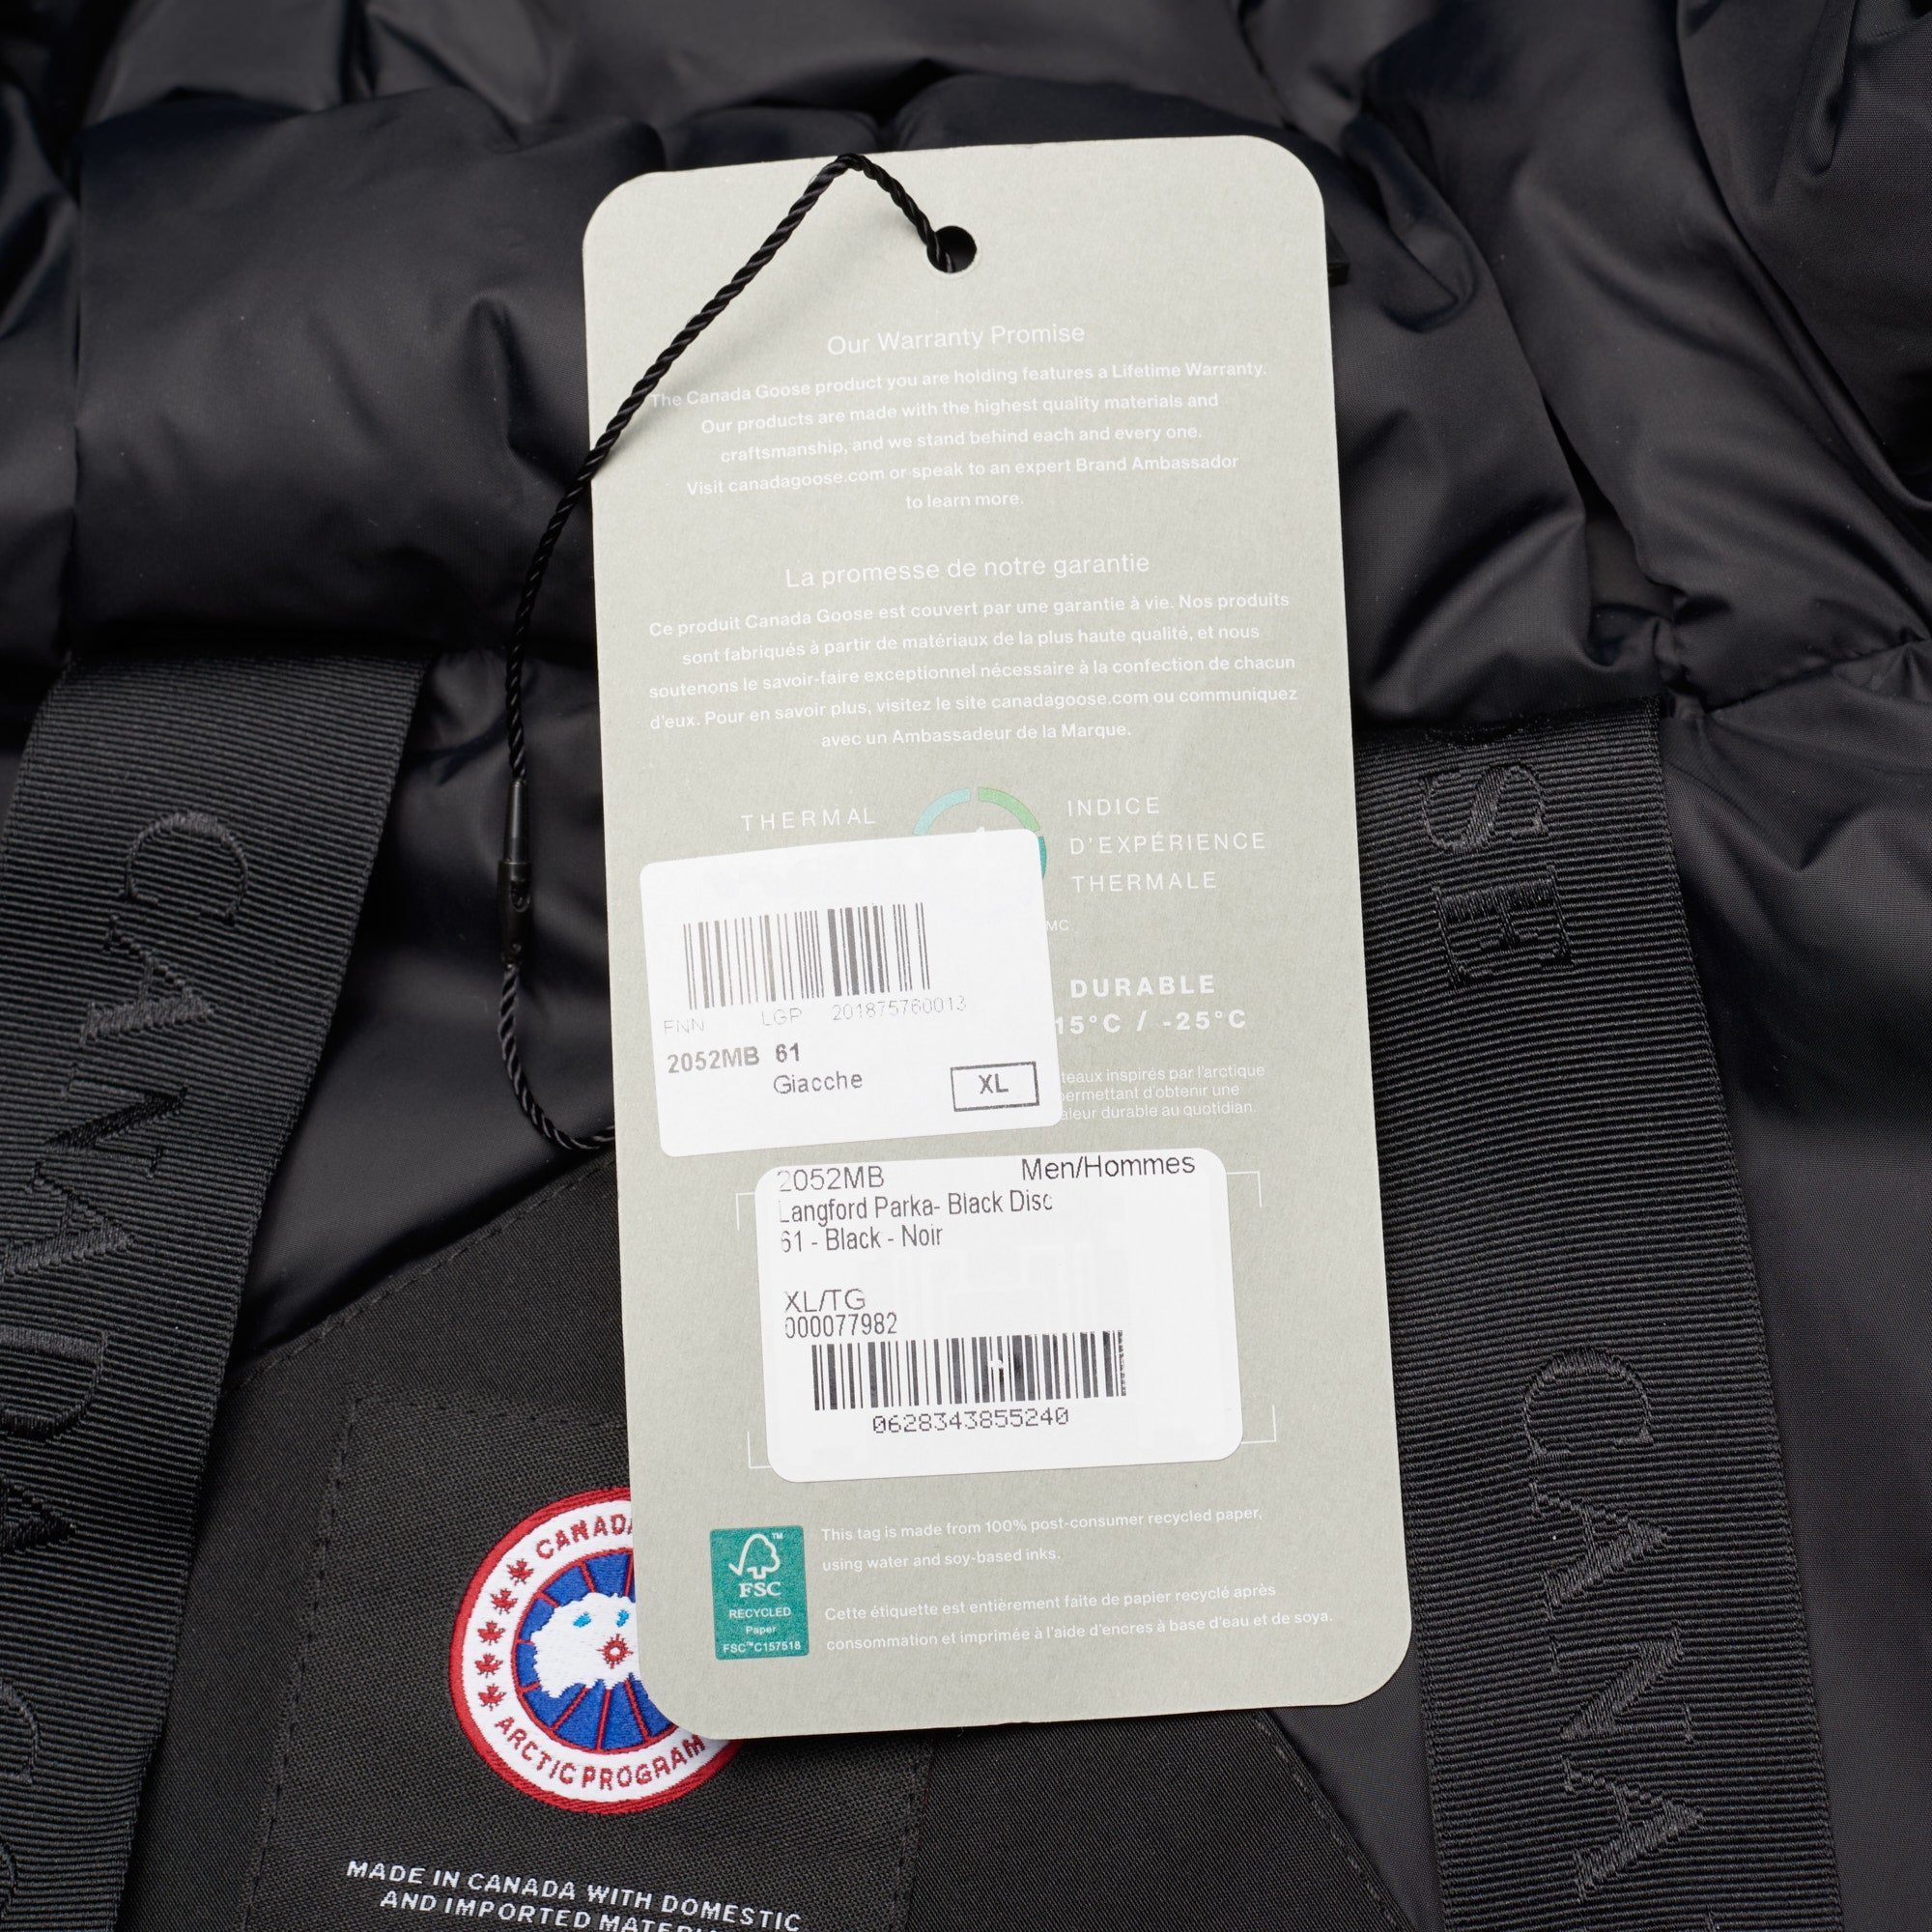 CANADA GOOSE  Langford Parka  Black Label 2052MB 61 Black Down Jacket Coat